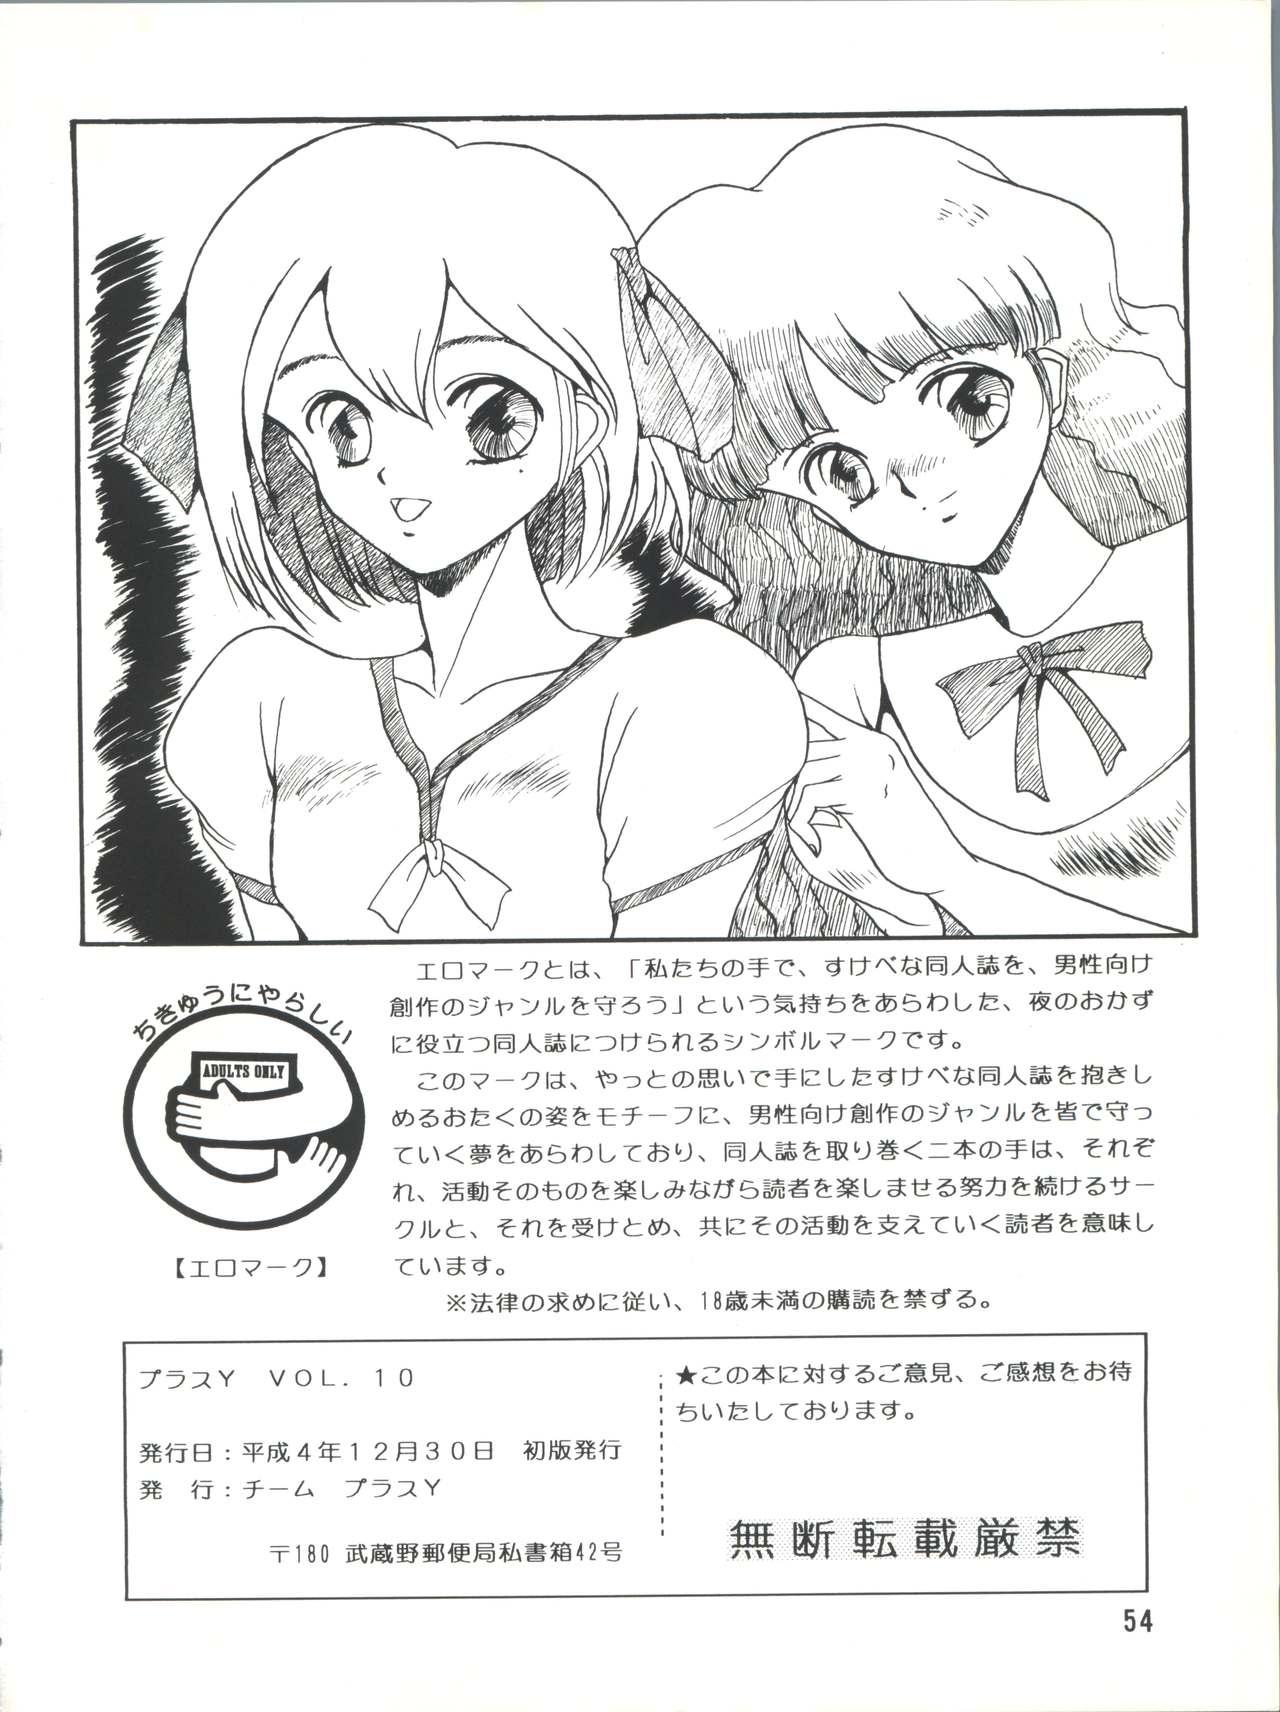 High Heels PLUS-Y Vol.10 - Sailor moon Dragon quest v Slut - Page 54